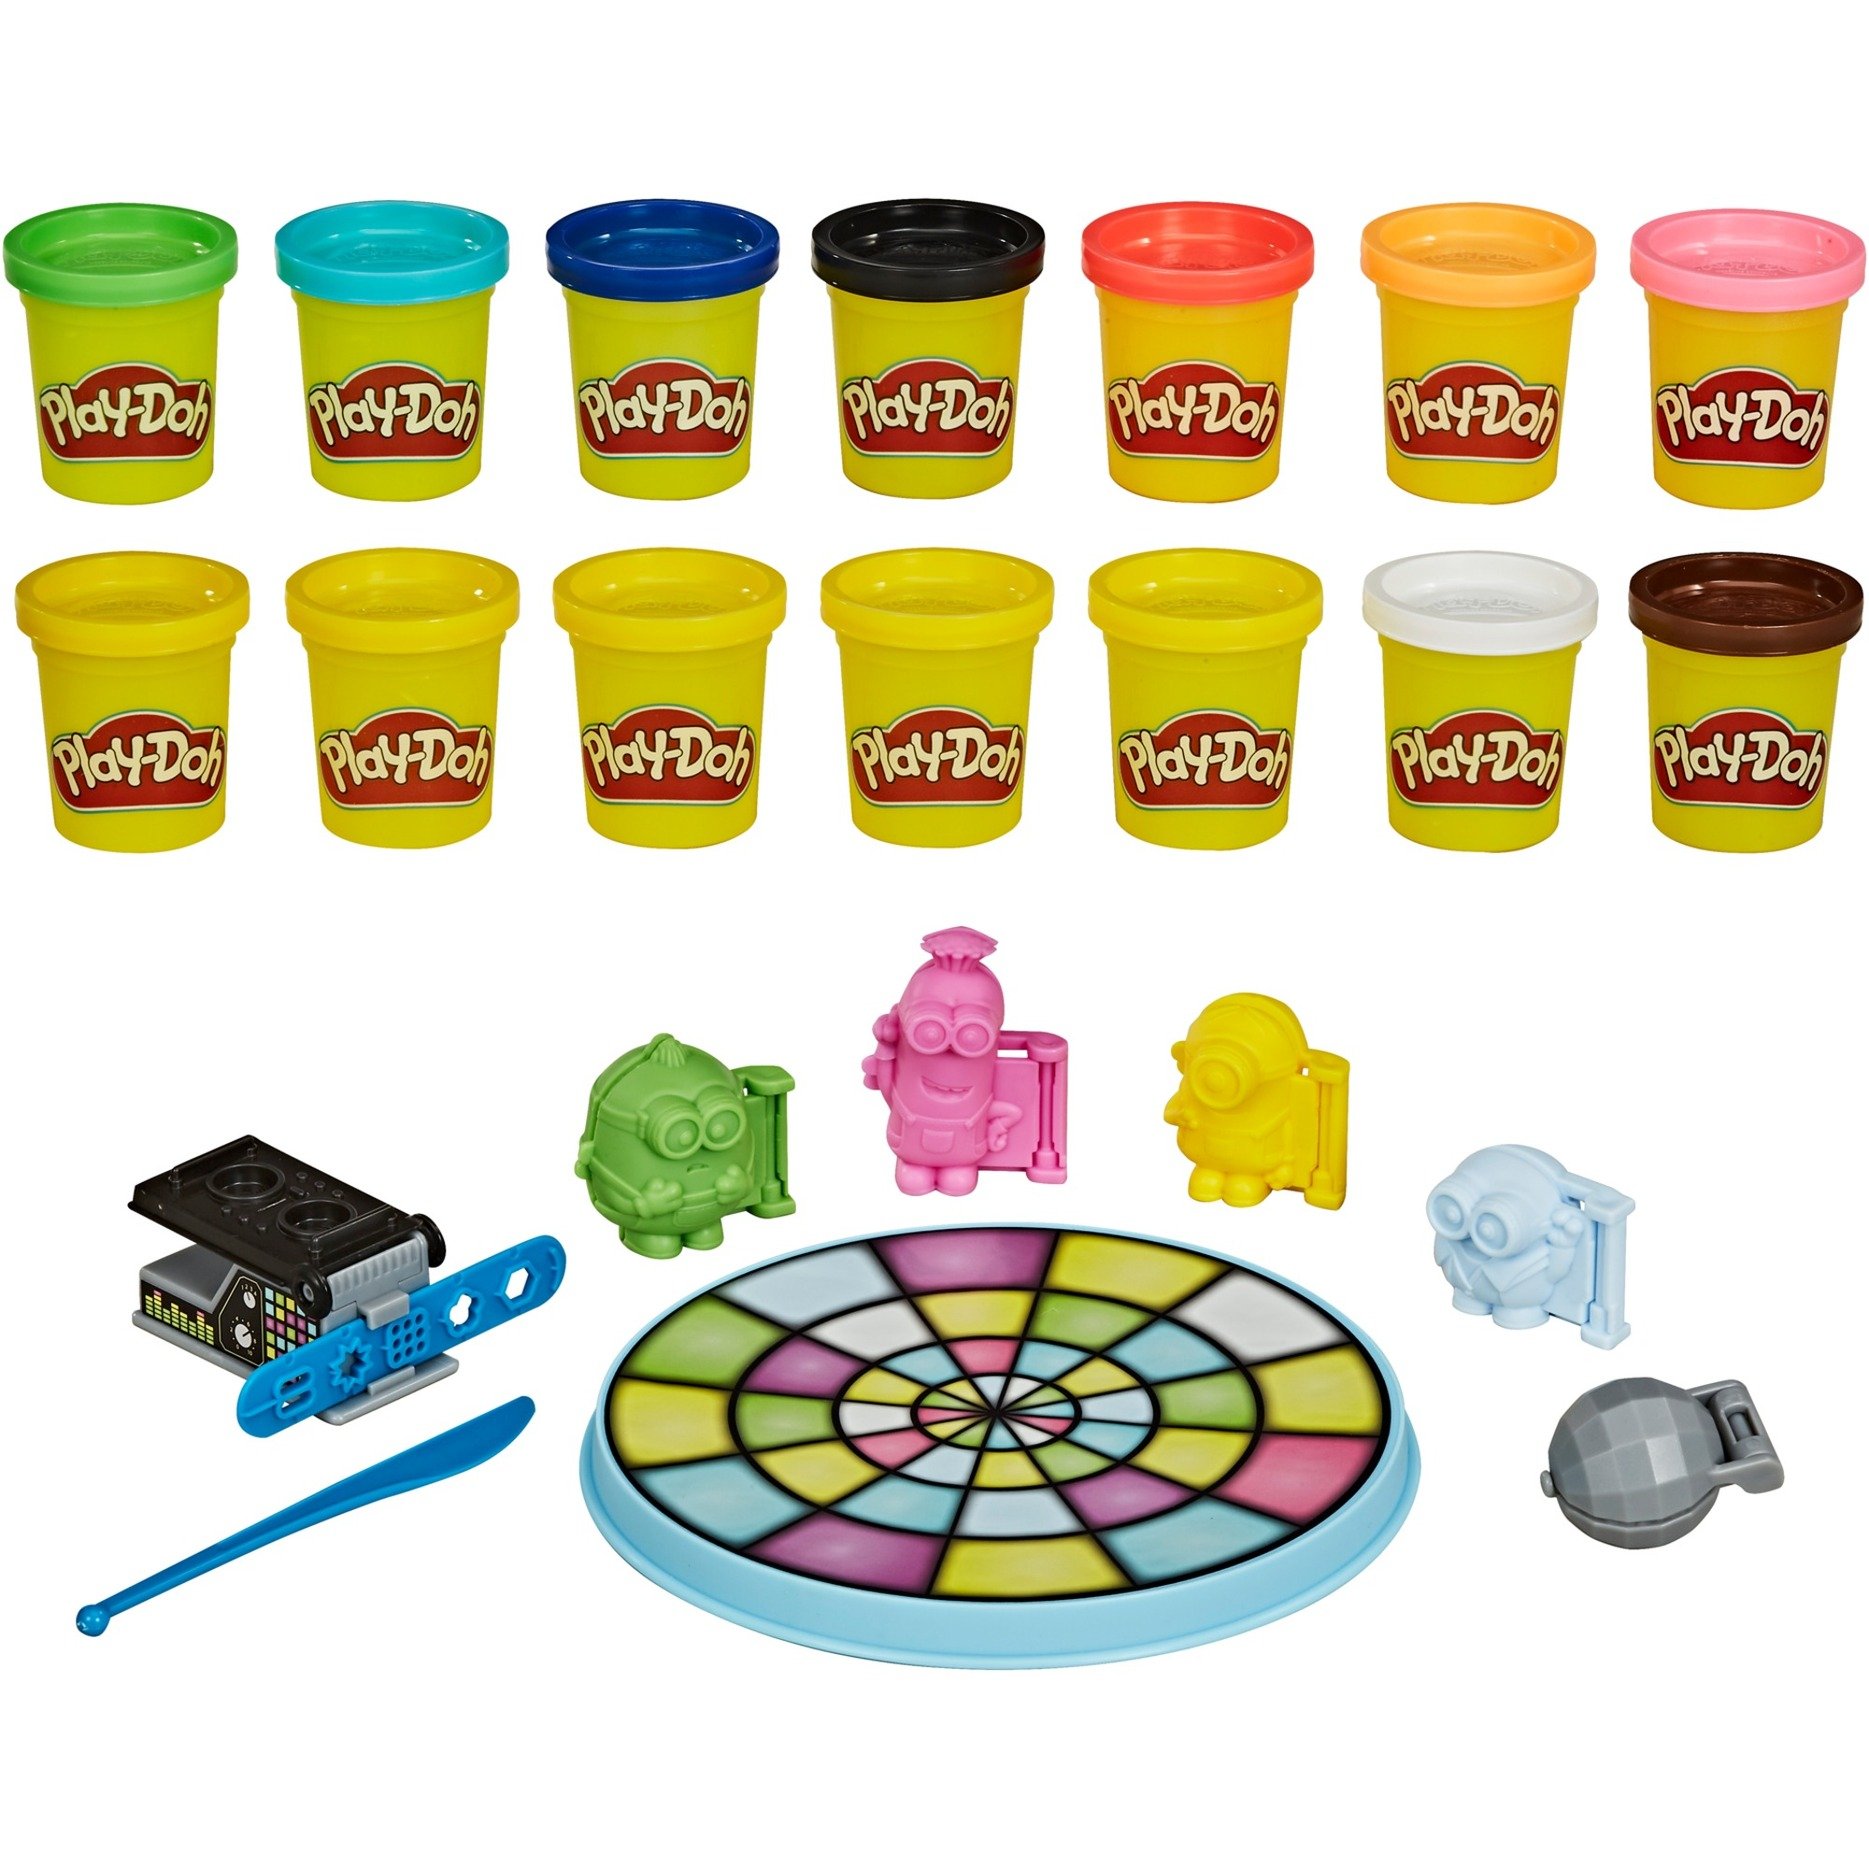 Image of Alternate - Play-Doh Minions Disko, Kneten online einkaufen bei Alternate